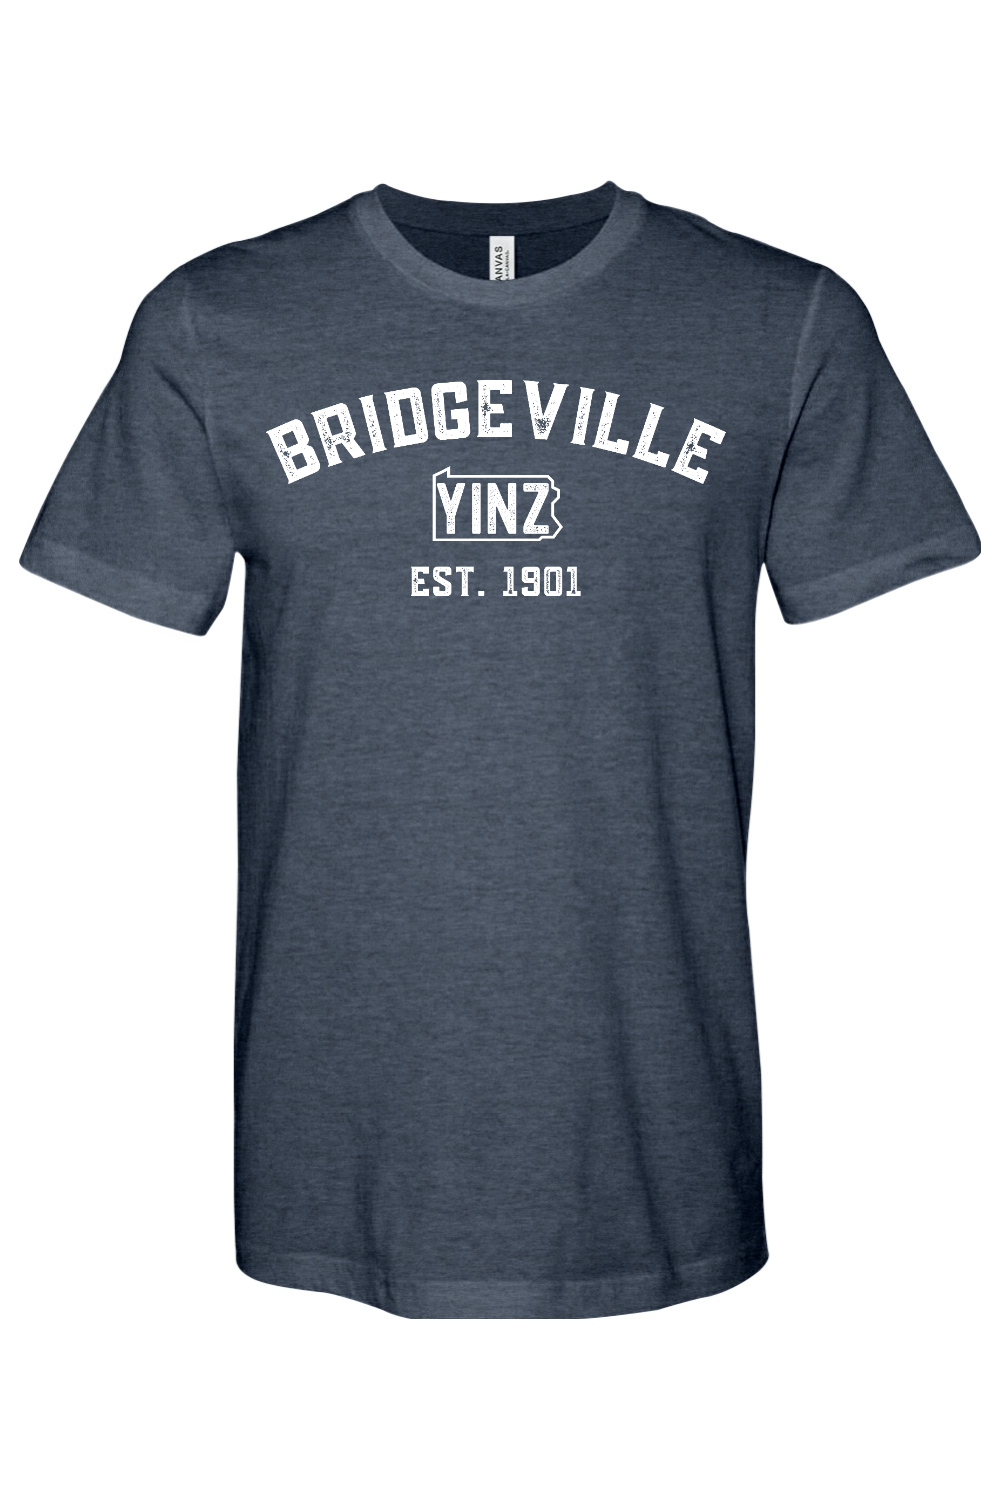 Bridgeville Yinzylvania - Yinzylvania